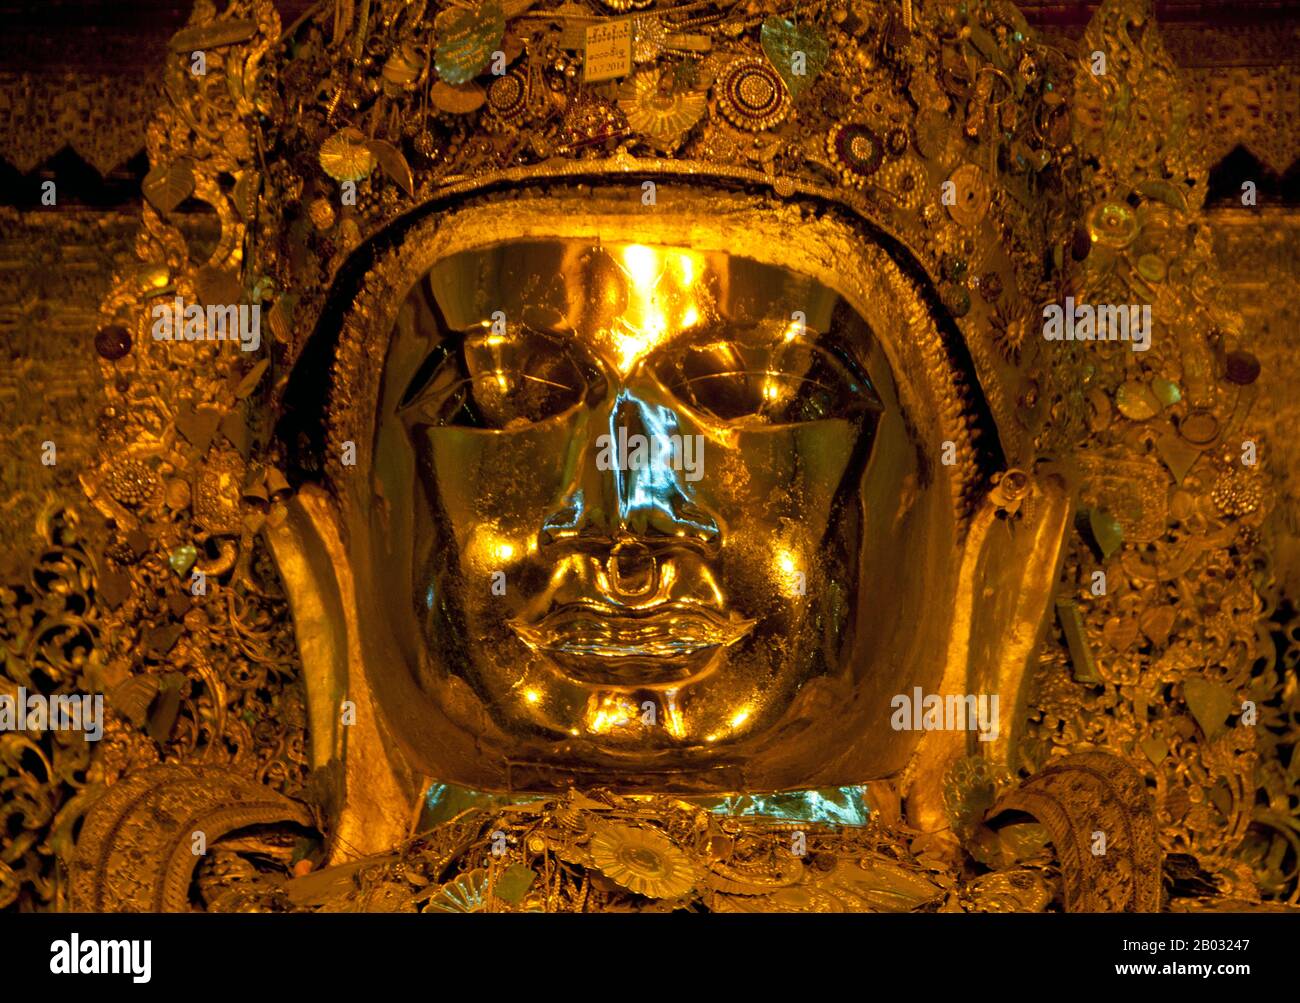 Il Tempio del Buddha di Mahamuni, chiamato anche Pagoda di Mahamuni, è un tempio buddista e principale luogo di pellegrinaggio, situato a sud-ovest di Mandalay, Birmania (Myanmar). L'immagine del Buddha di Mahamuni (significato letterale: Il Grande Sage) è deificata in questo tempio, e originariamente proveniva da Arakan. E' molto venerata in Birmania e centrale nella vita di molte persone, poiché è vista come un'espressione di rappresentazione della vita del Buddha. L'antica tradizione si riferisce solo a cinque somiglianze del Buddha, fatte durante la sua vita; due erano in India, due in paradiso, e la quinta è l'immagine del Buddha di Mahamuni in Myanmar. Accordi Foto Stock